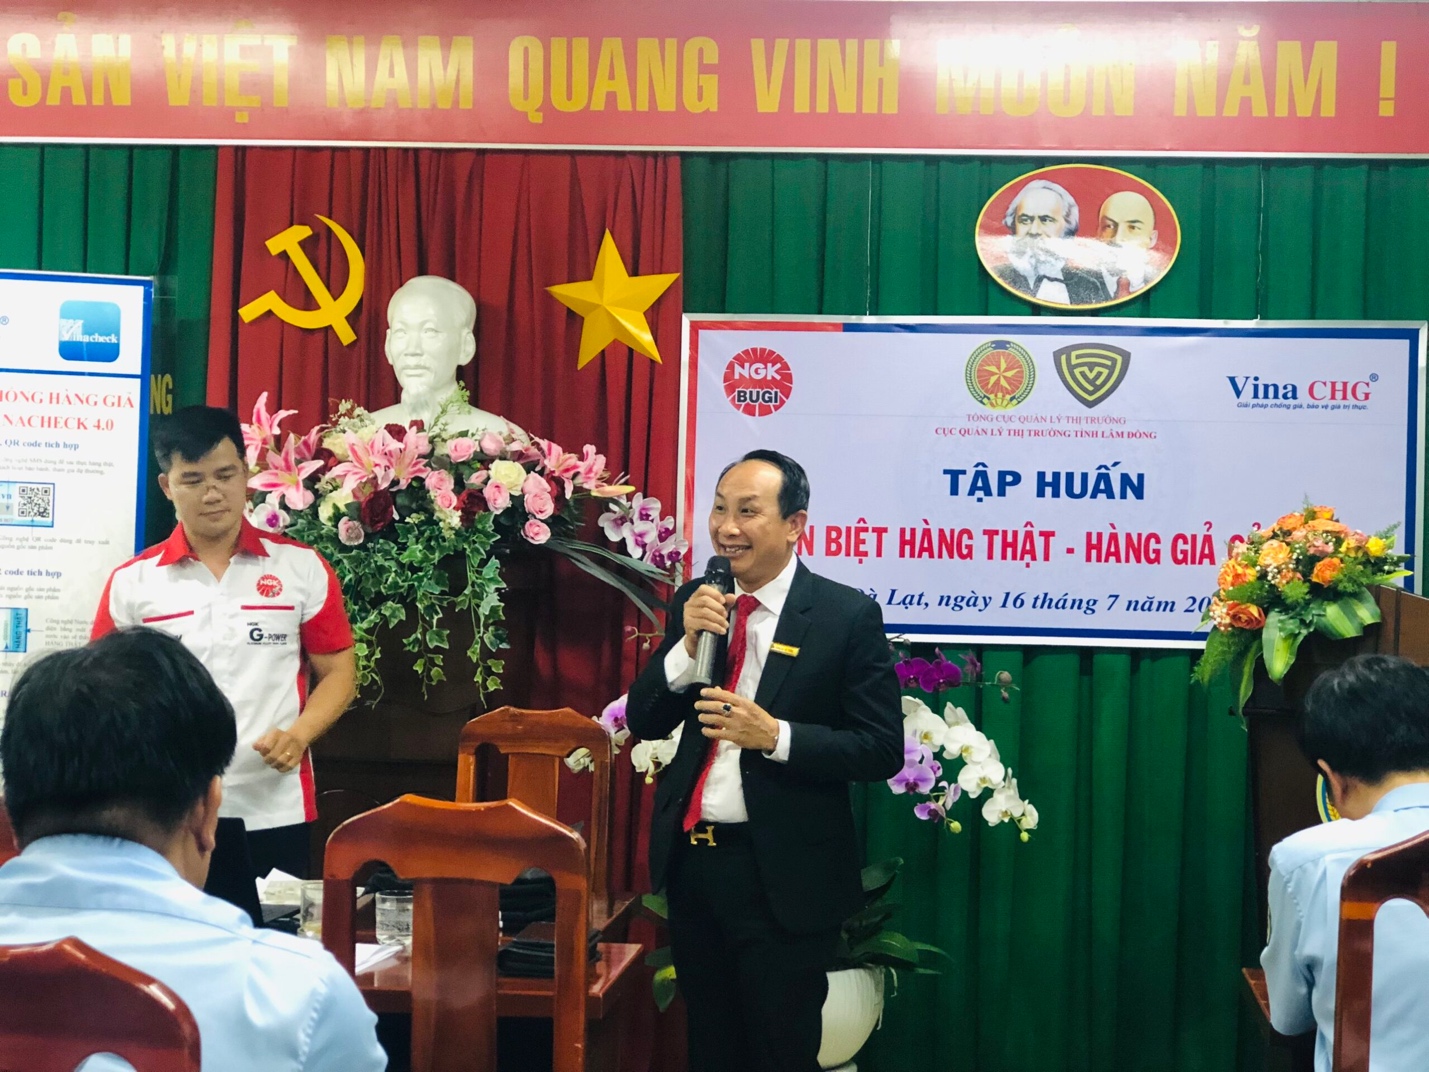 Ông Nguyễn Viết Hồng cho biết, Vina CHG đã đồng hành và sát cánh trong nhiều chương trình chống hàng giả, bảo vệ thương hiệu của NGK tại Việt Nam, đồng thời chia sẻ về các giải pháp chống giả đang được áp dụng hiện nay